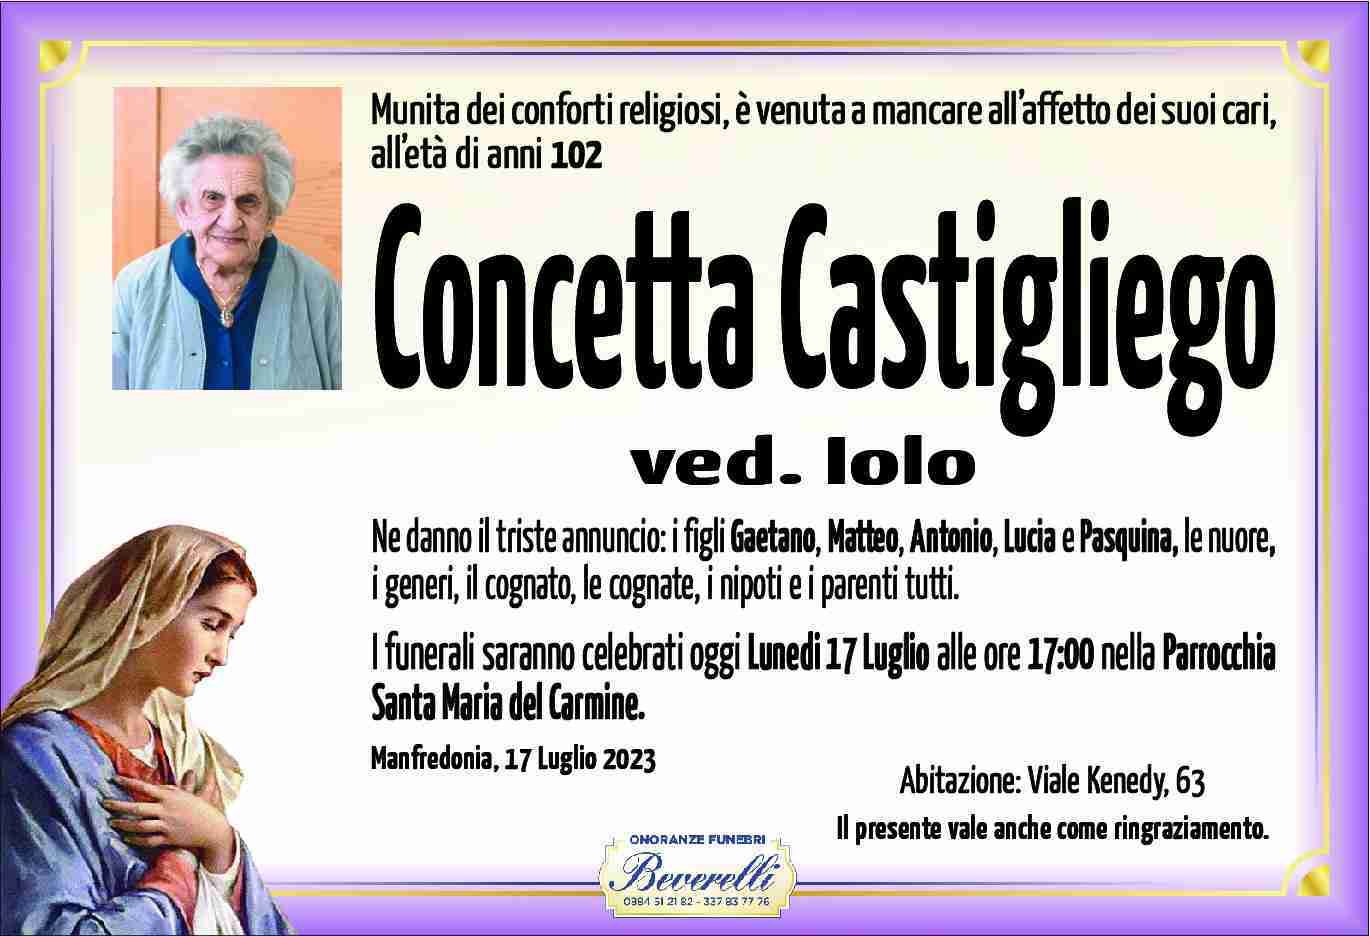 Concetta Castigliego